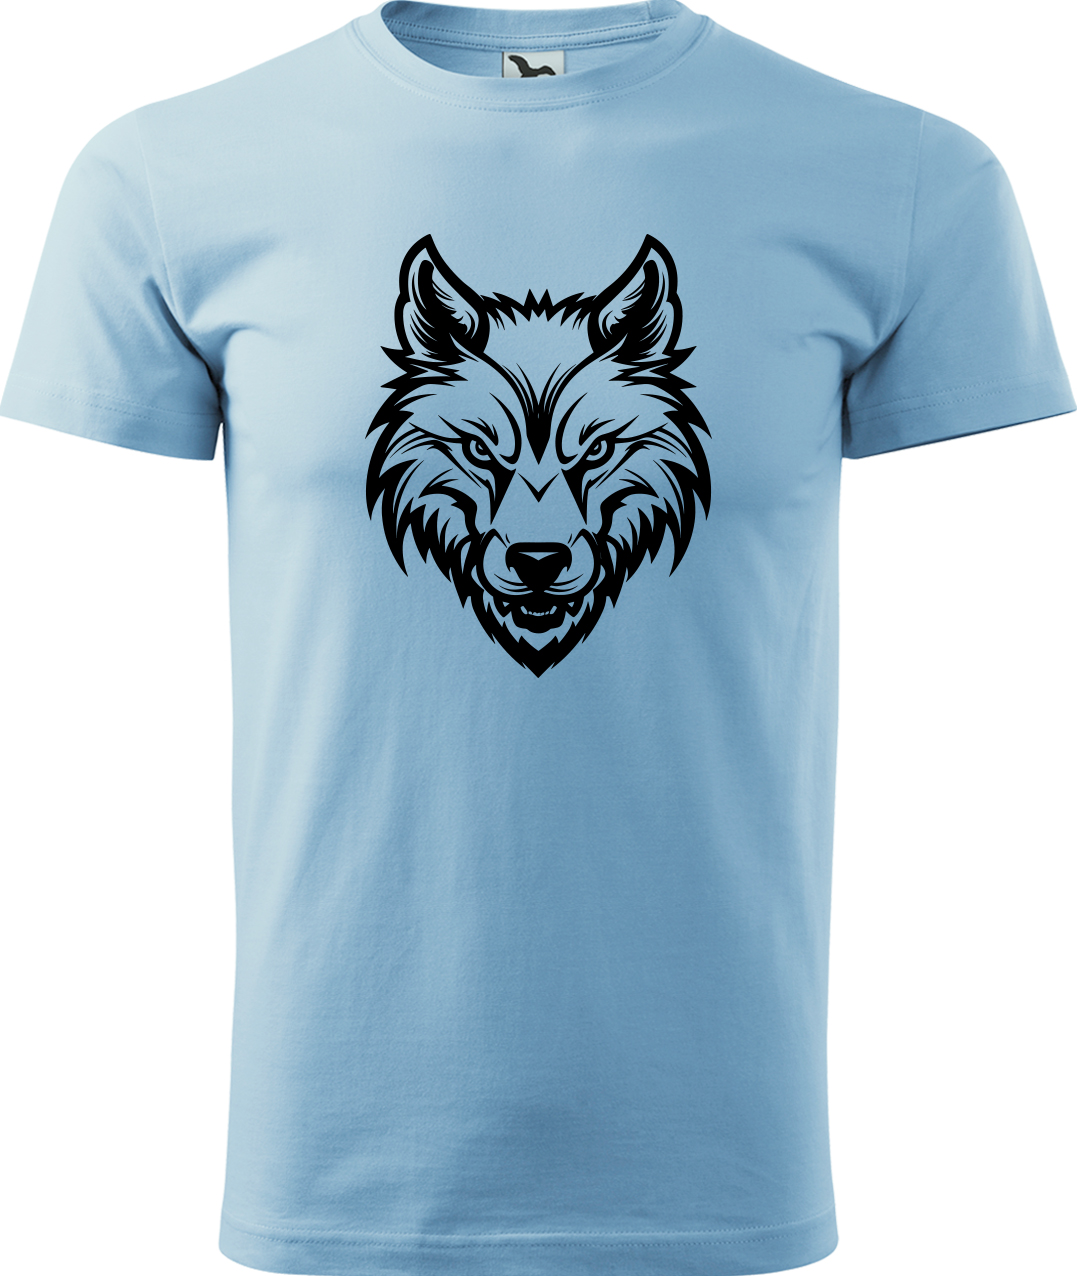 Pánské tričko s vlkem - Alfa samec Velikost: M, Barva: Nebesky modrá (15), Střih: pánský